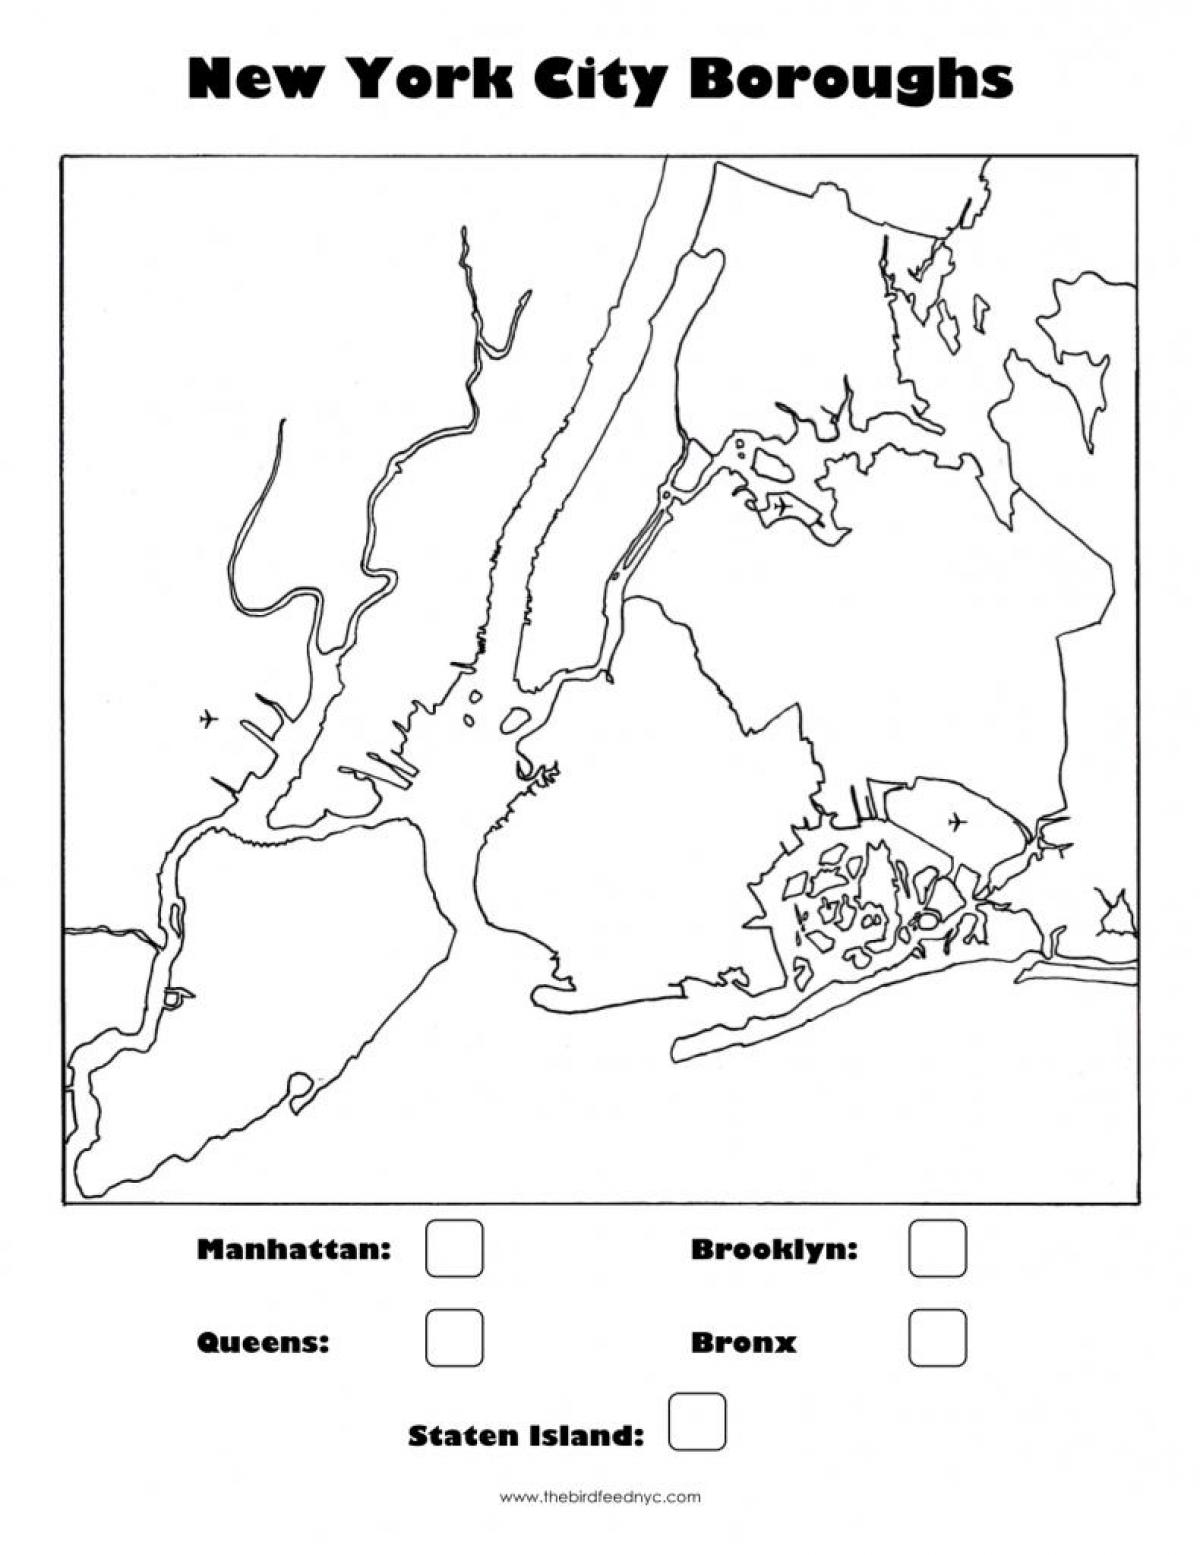 бланковой карте Нью-Йорка